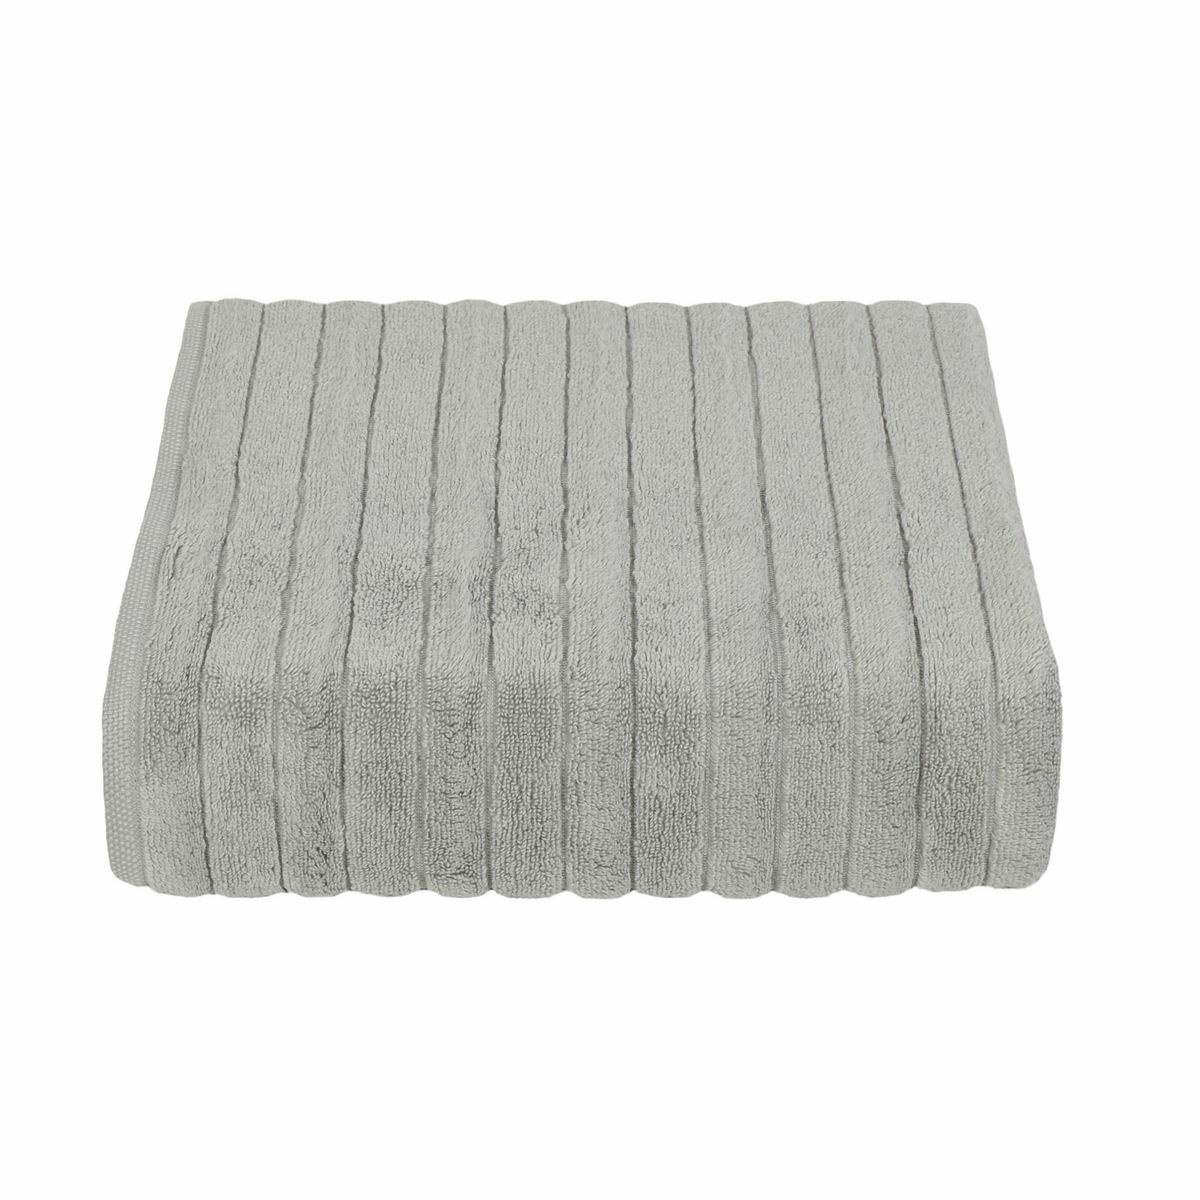 Ręcznik kąpielowy mikrobawełna DELUXE szary, 70 x 140 cm, 70 x 140 cm